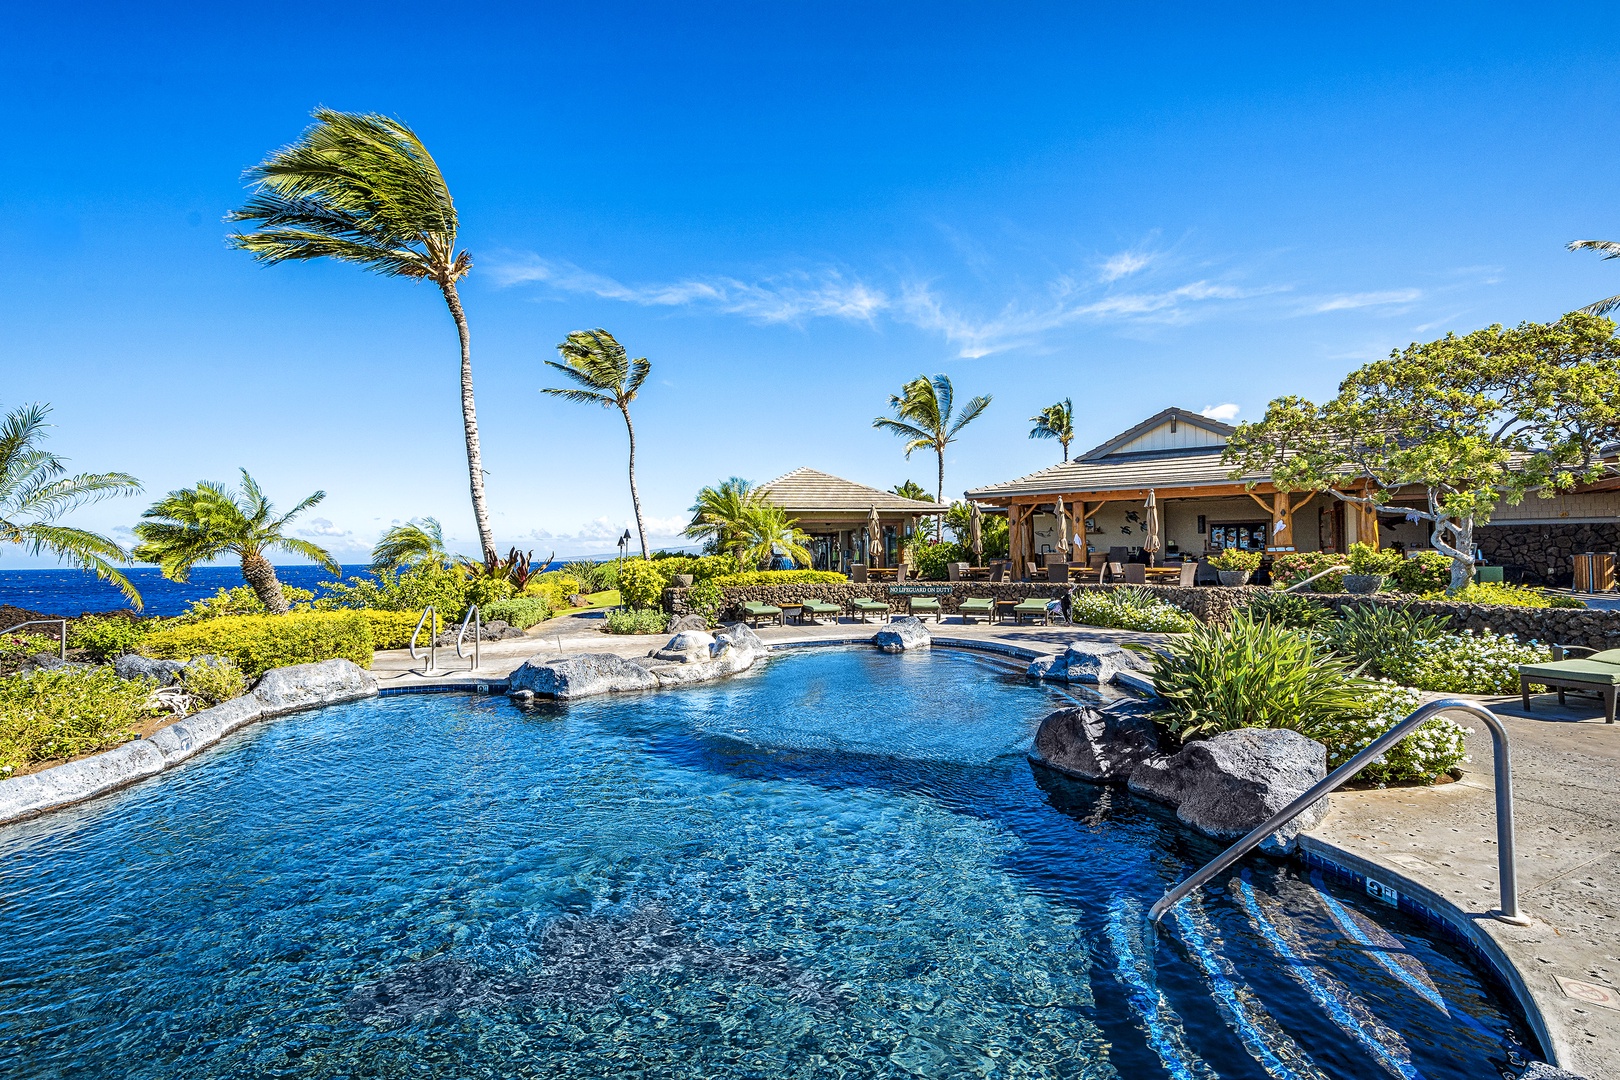 Waikoloa Vacation Rentals, Hali'i Kai at Waikoloa Beach Resort 9F - Beautiful nearby pool at the Hali'i Kai